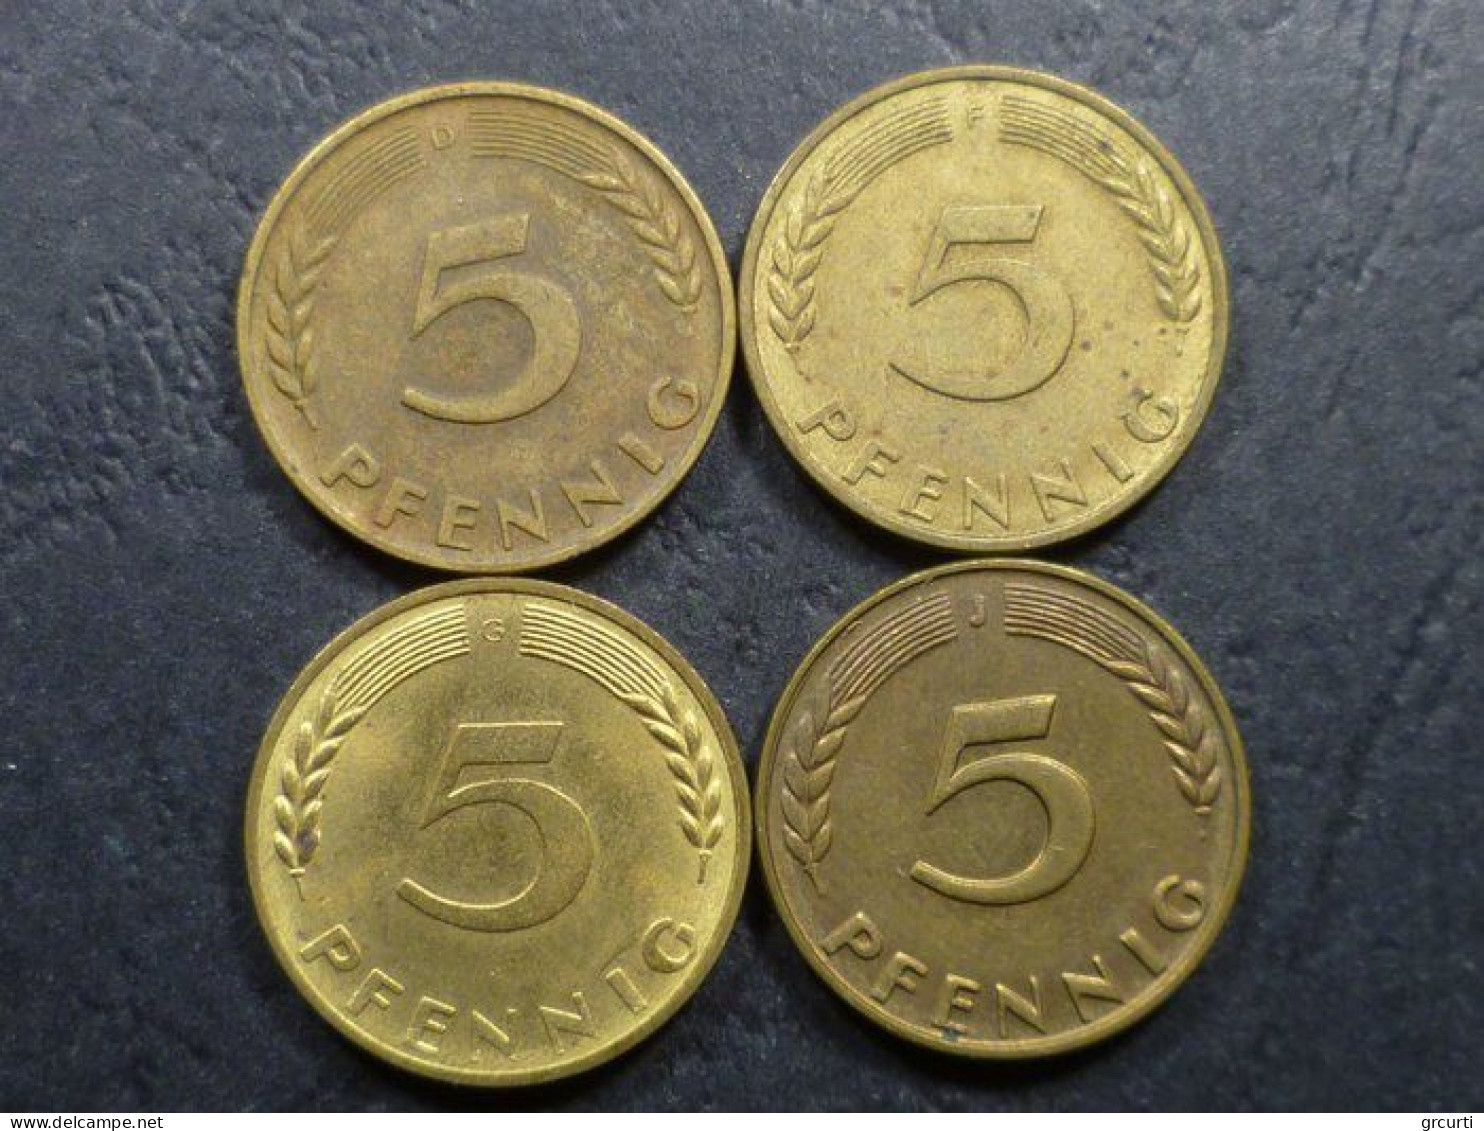 Germania - 5 Pfenning - Lotto di 132 monete emesse dal 1949 al 1996